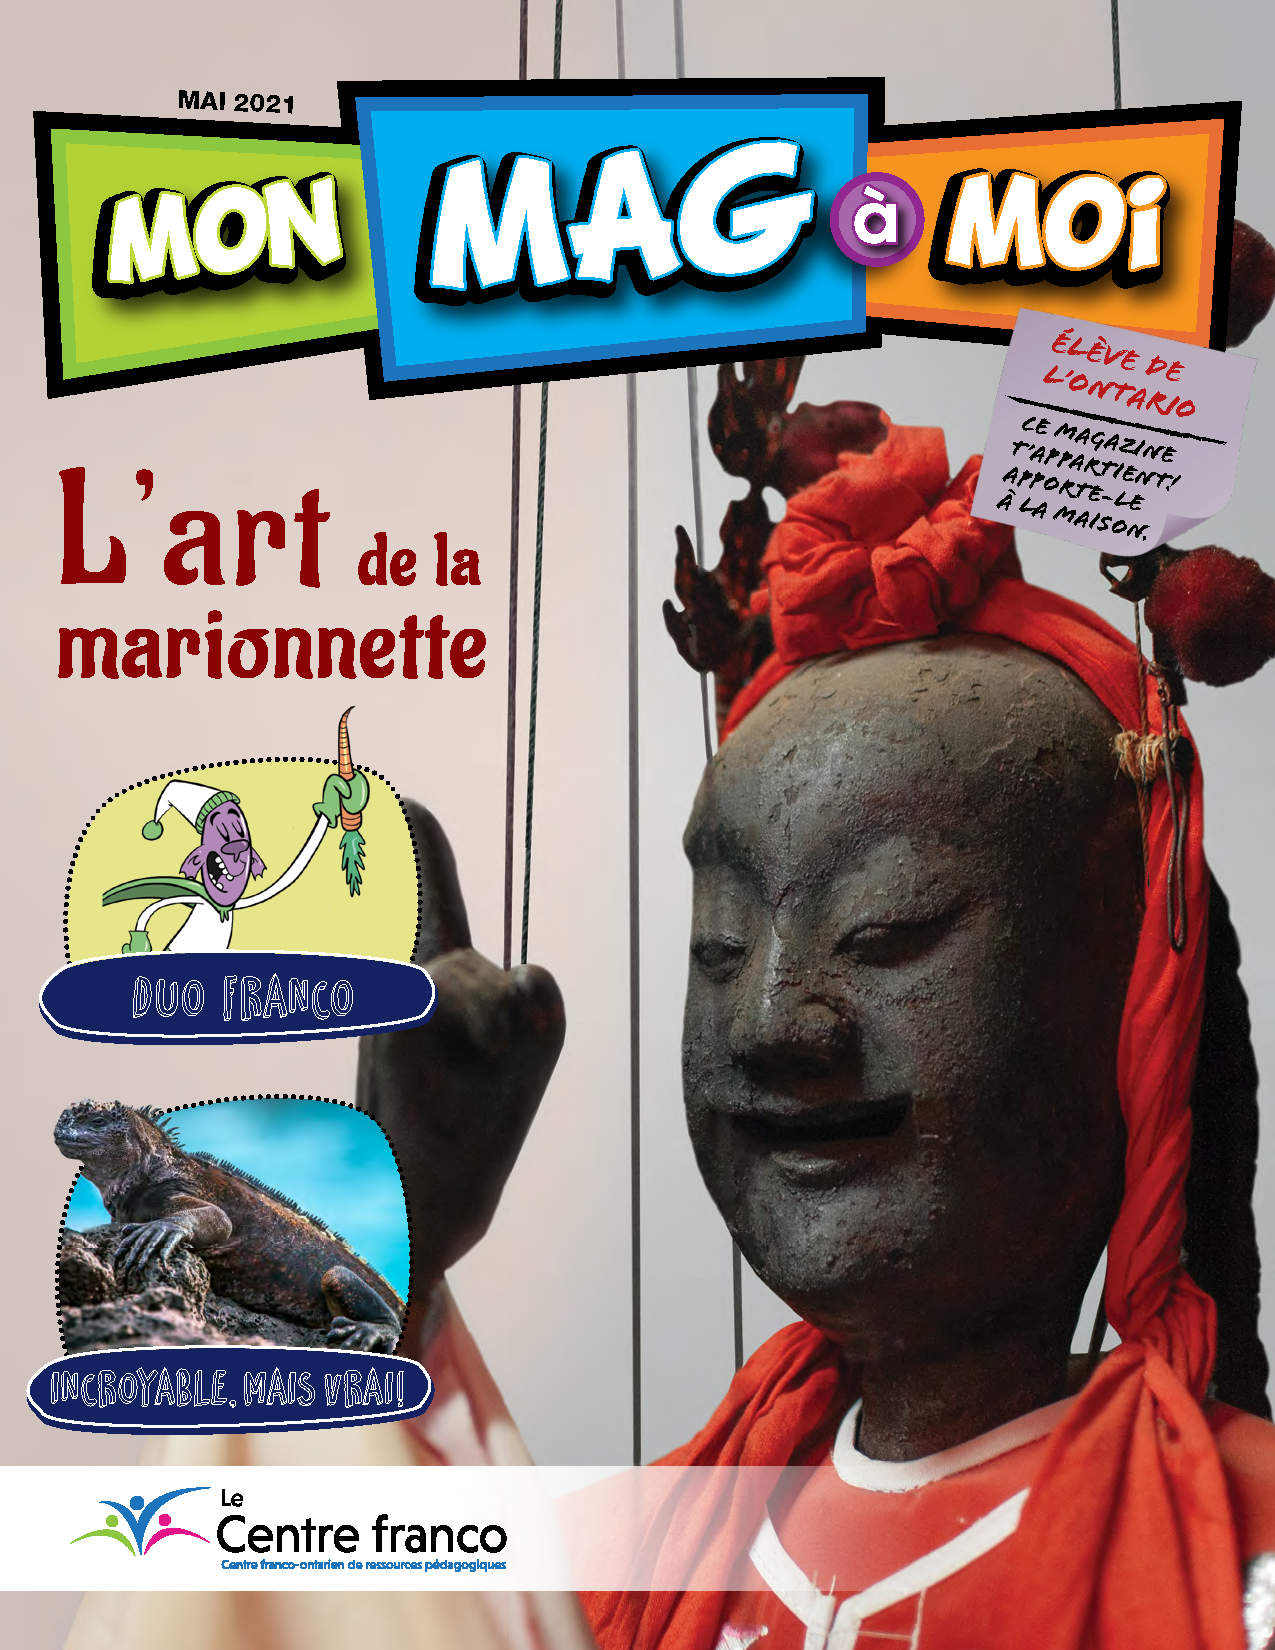 Visionner le magazine Mon Mag à Moi volume 14 numéro 2.